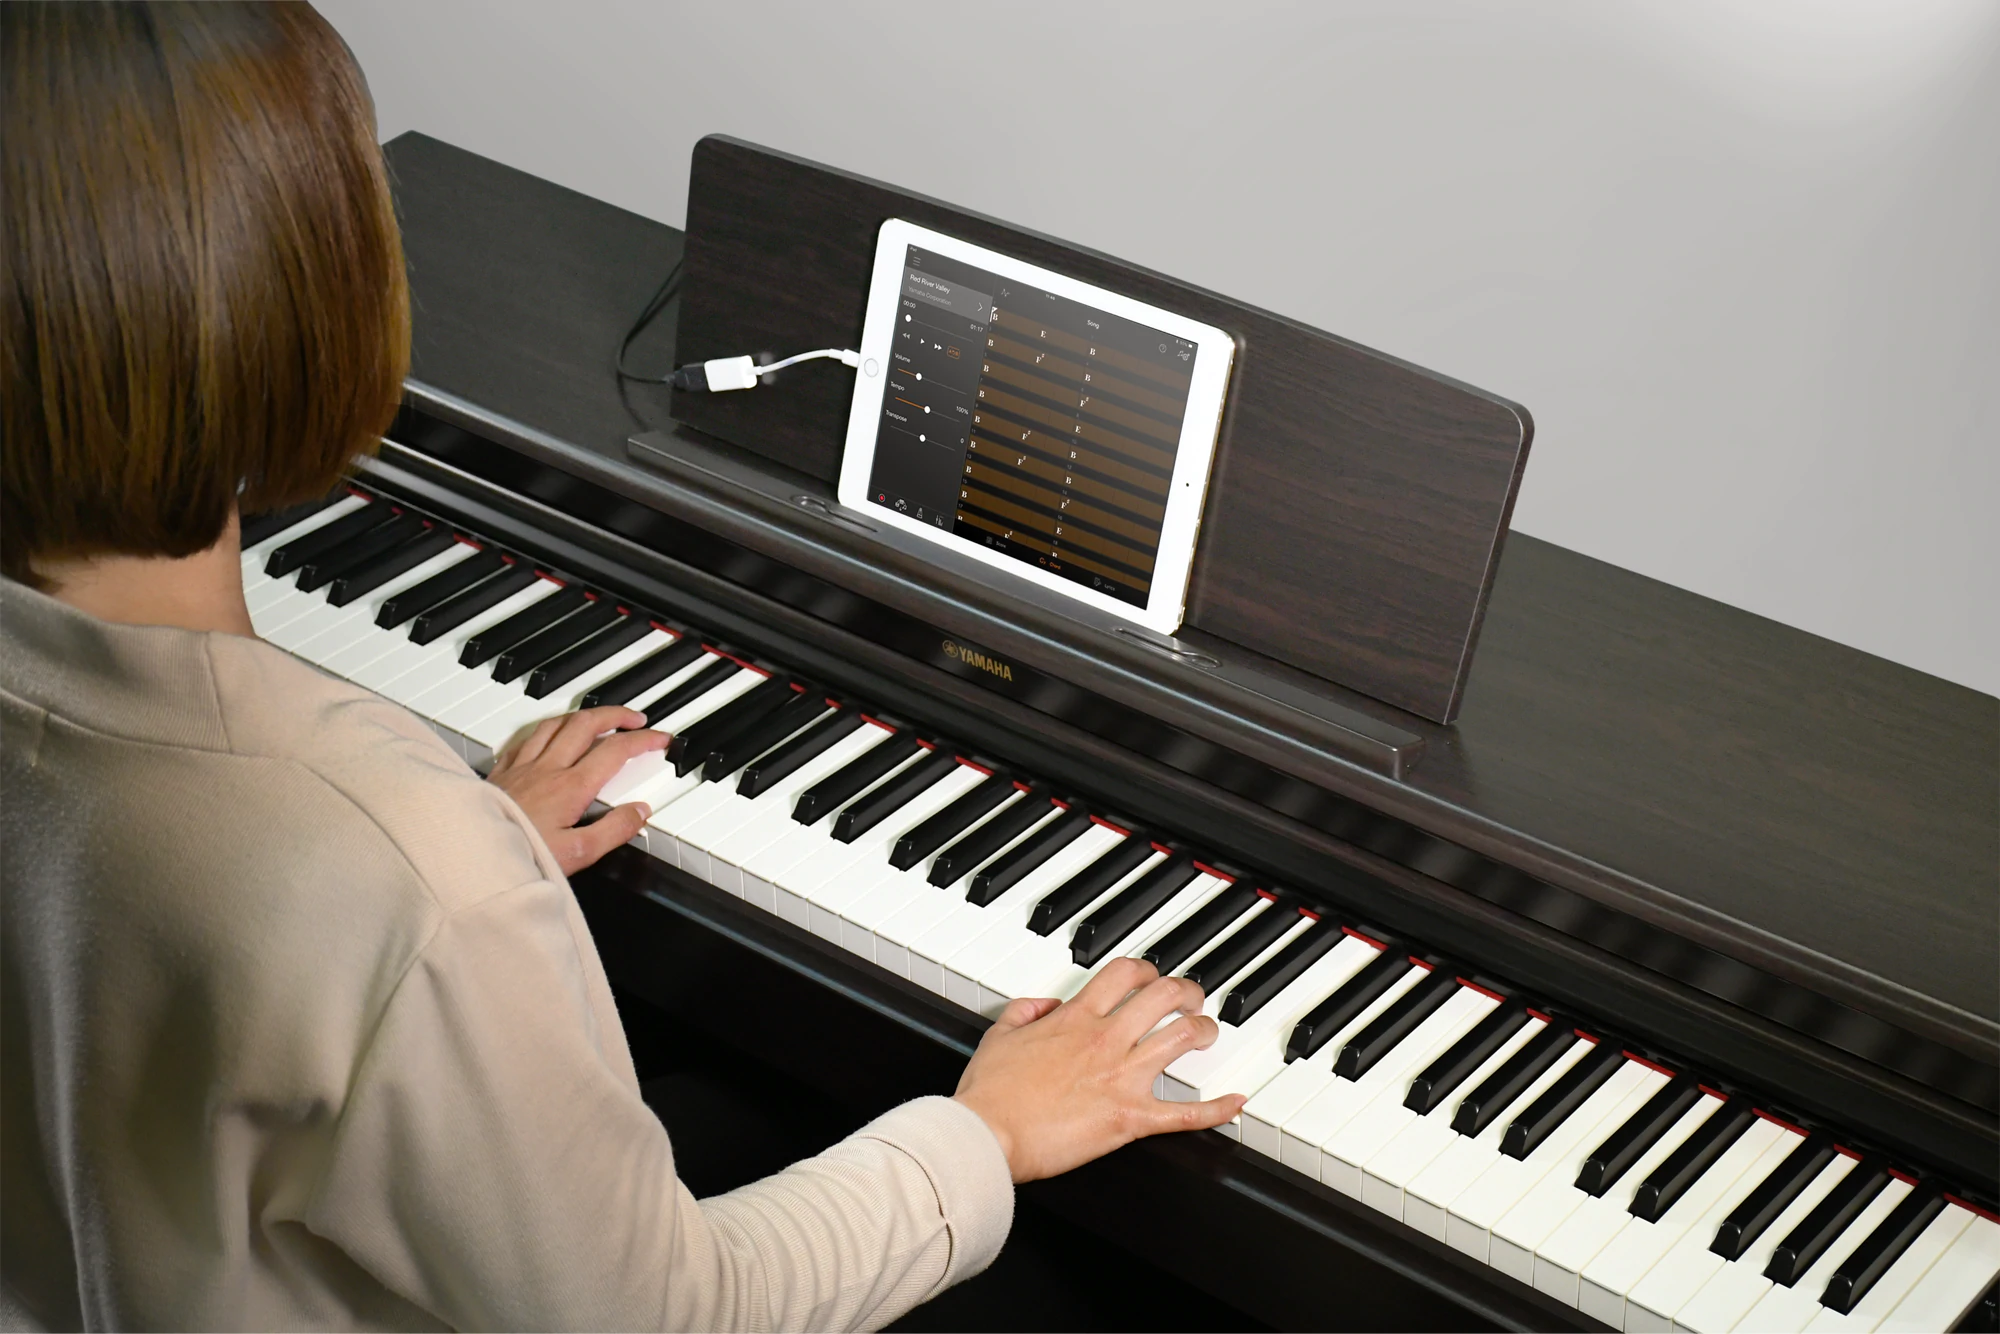 Yamaha Smart Pianist